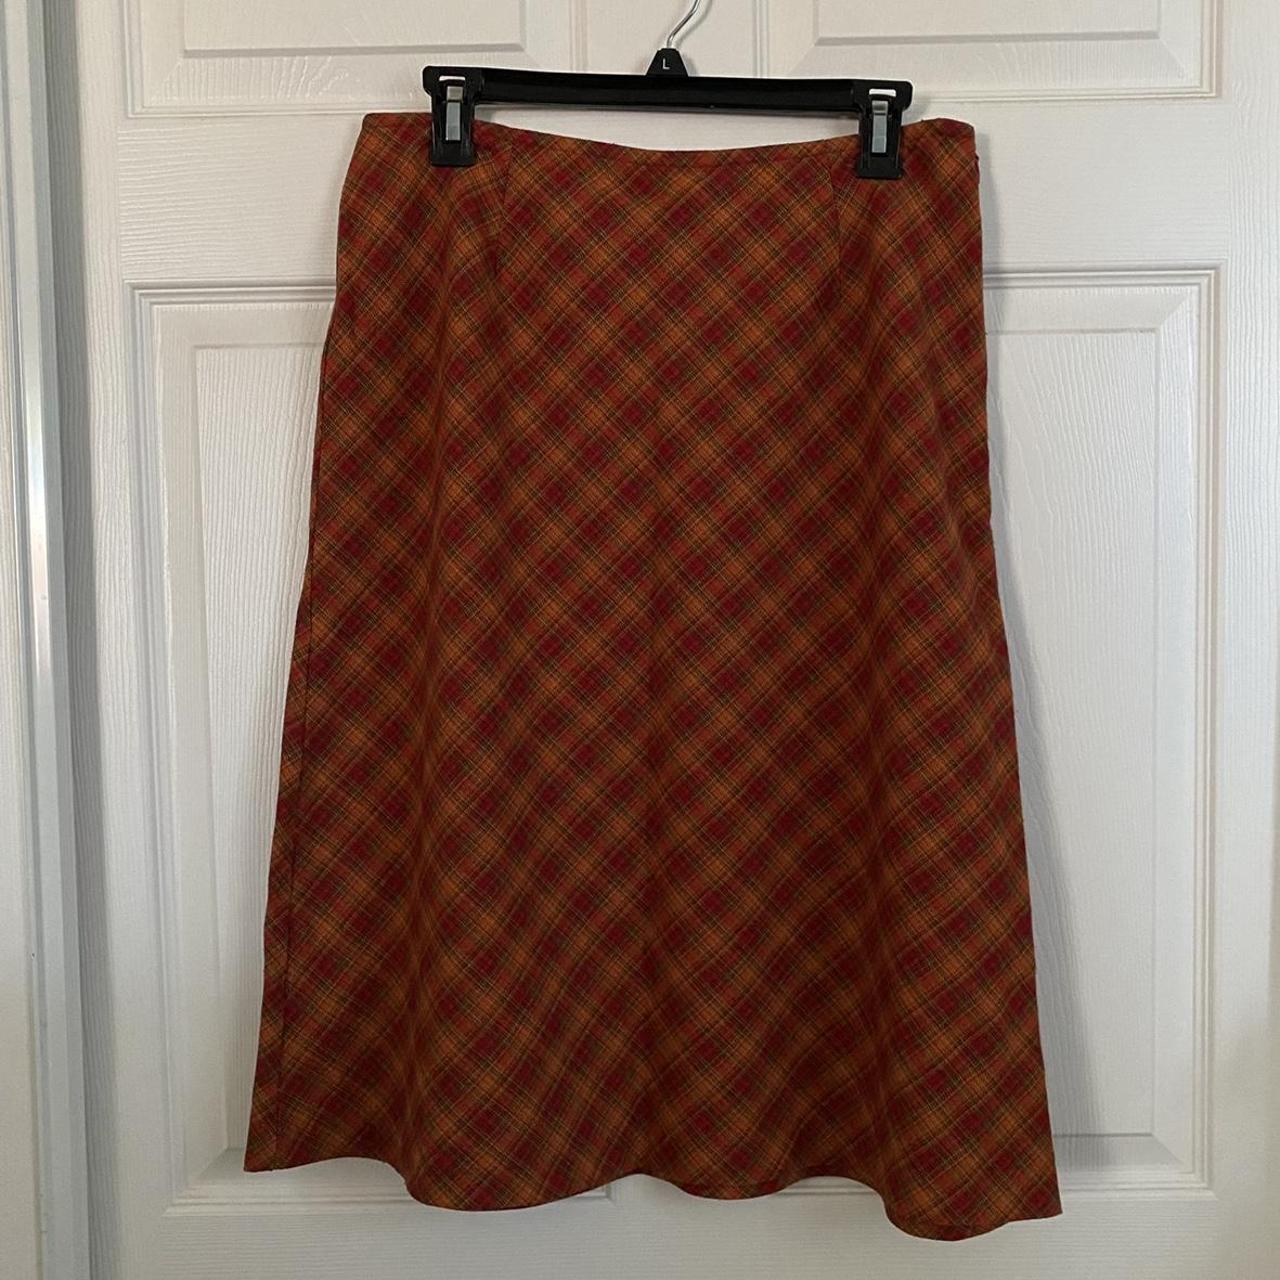 High Sierra Women's Orange and Red Skirt